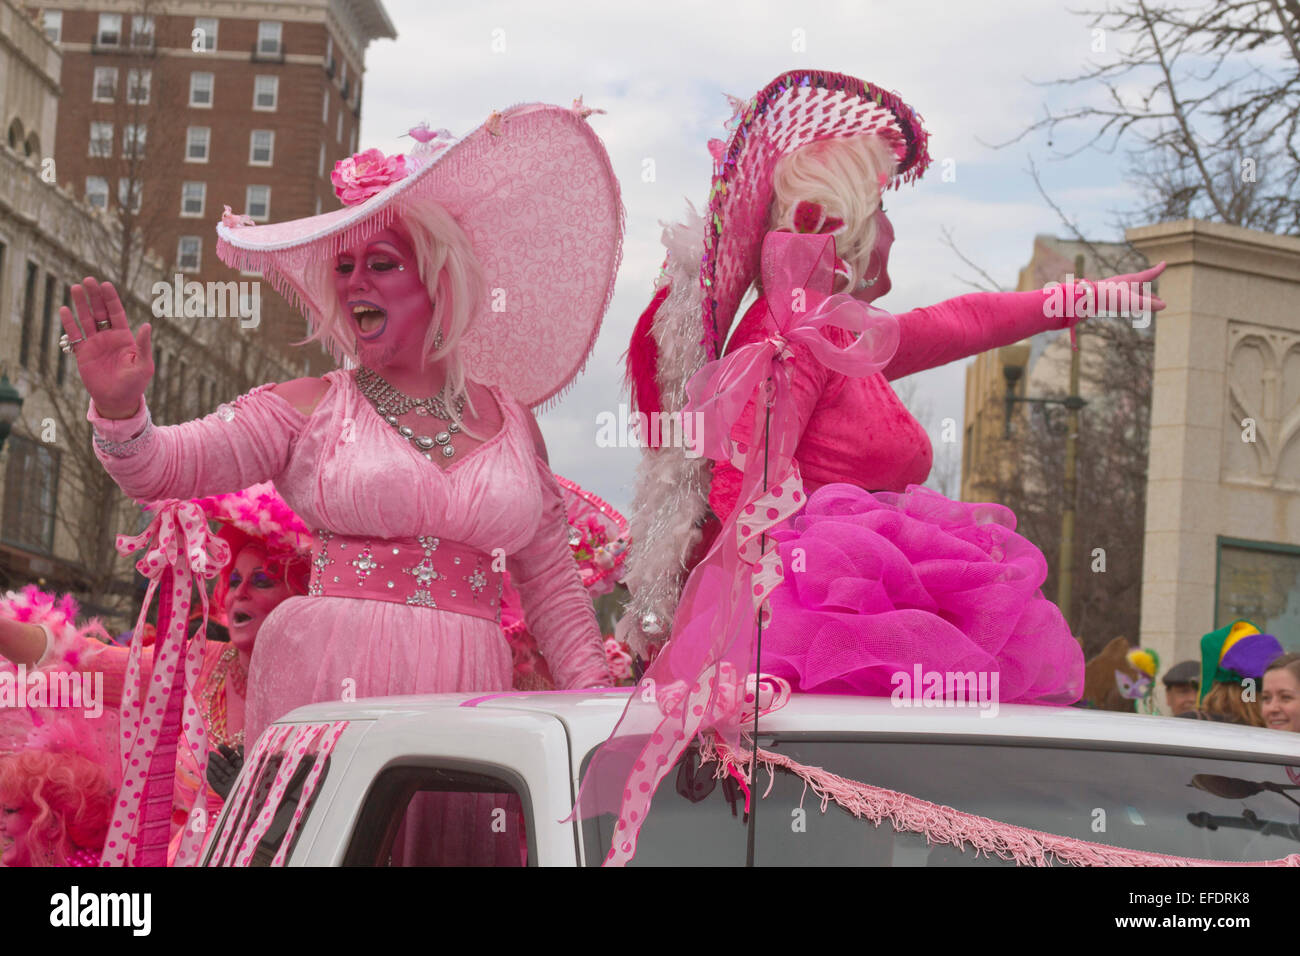 Zwei Rüschen kostümierte Damen alles in Rosa mit rosa Haut, mit einem Bart, Reiten und wave, um Menschen während der Karneval-parade Stockfoto